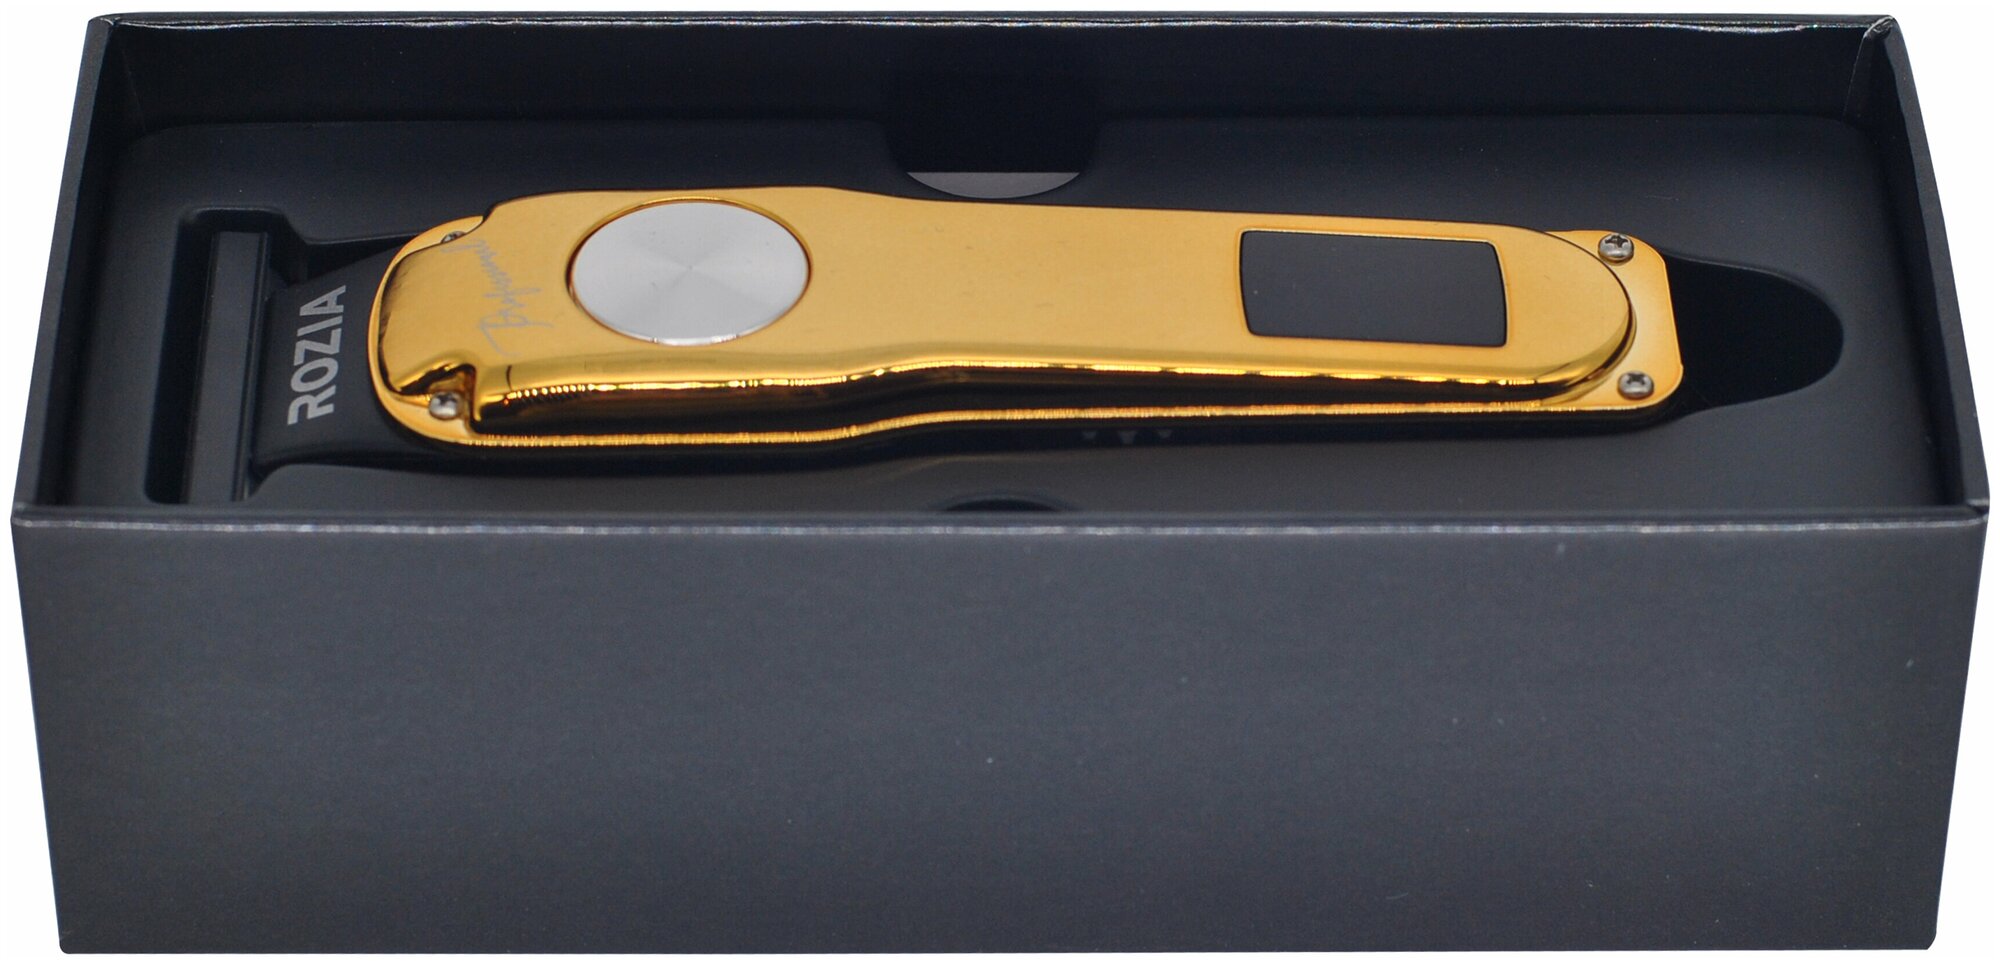 Профессиональная машинка для стрижки волос RoziaPro , уход за лицом, Триммер RoziaPro, серебристый, для оконтовки, с LED дисплеем, золотой - фотография № 4